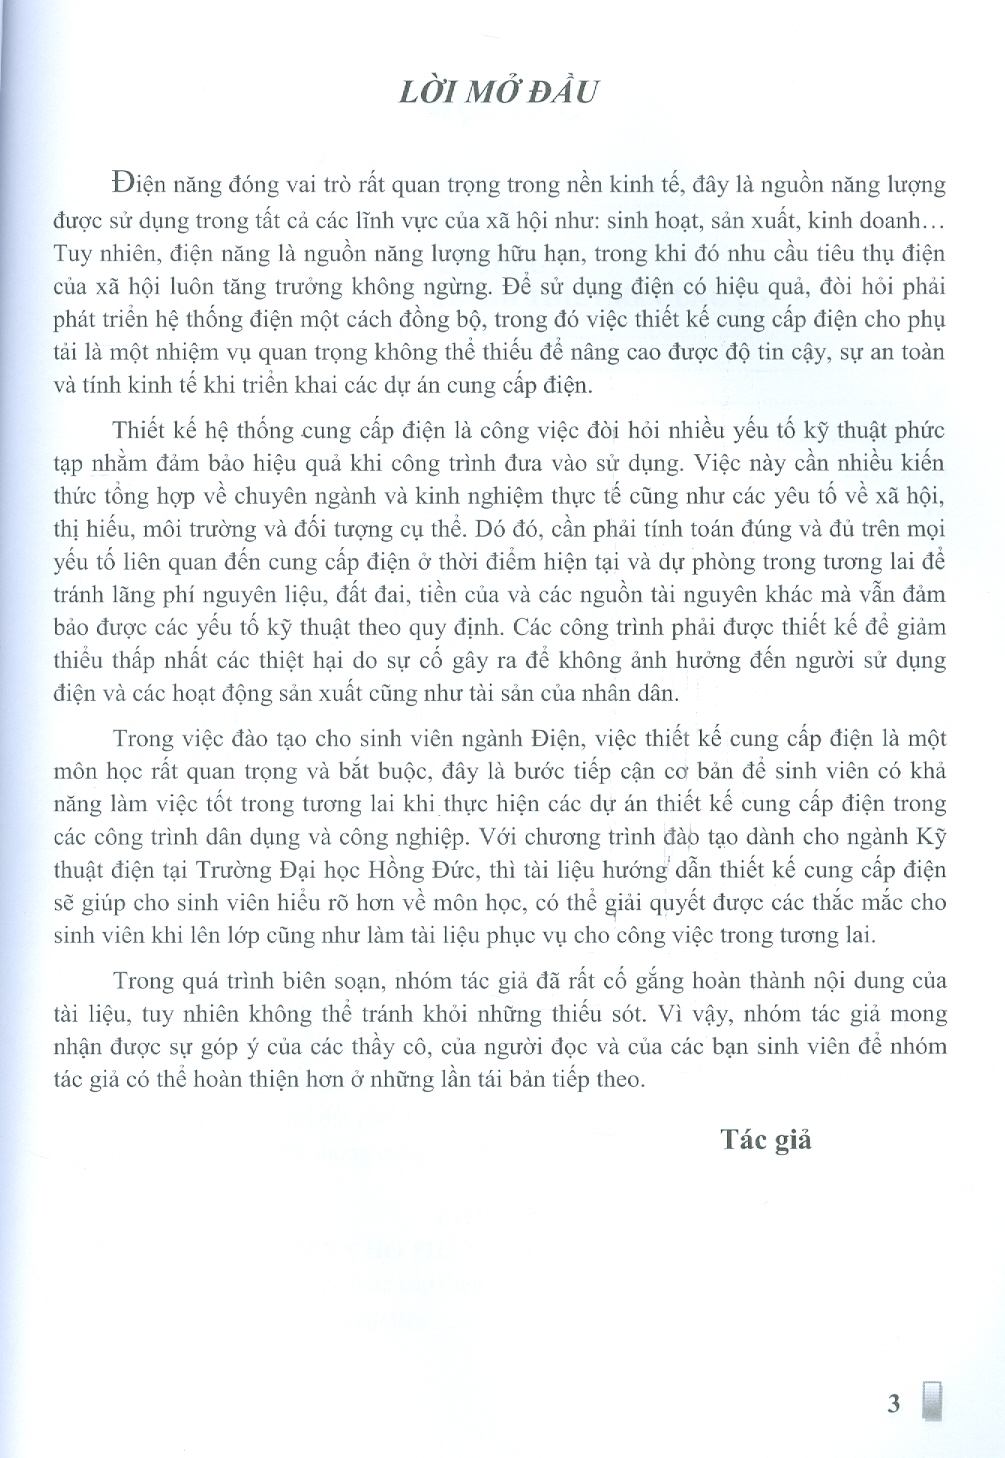 Thiết Kế Hệ Thống Cung Cấp Điện - Trần Hùng Cường, Nguyễn Thị Thắm (In giới hạn 30 quyển)